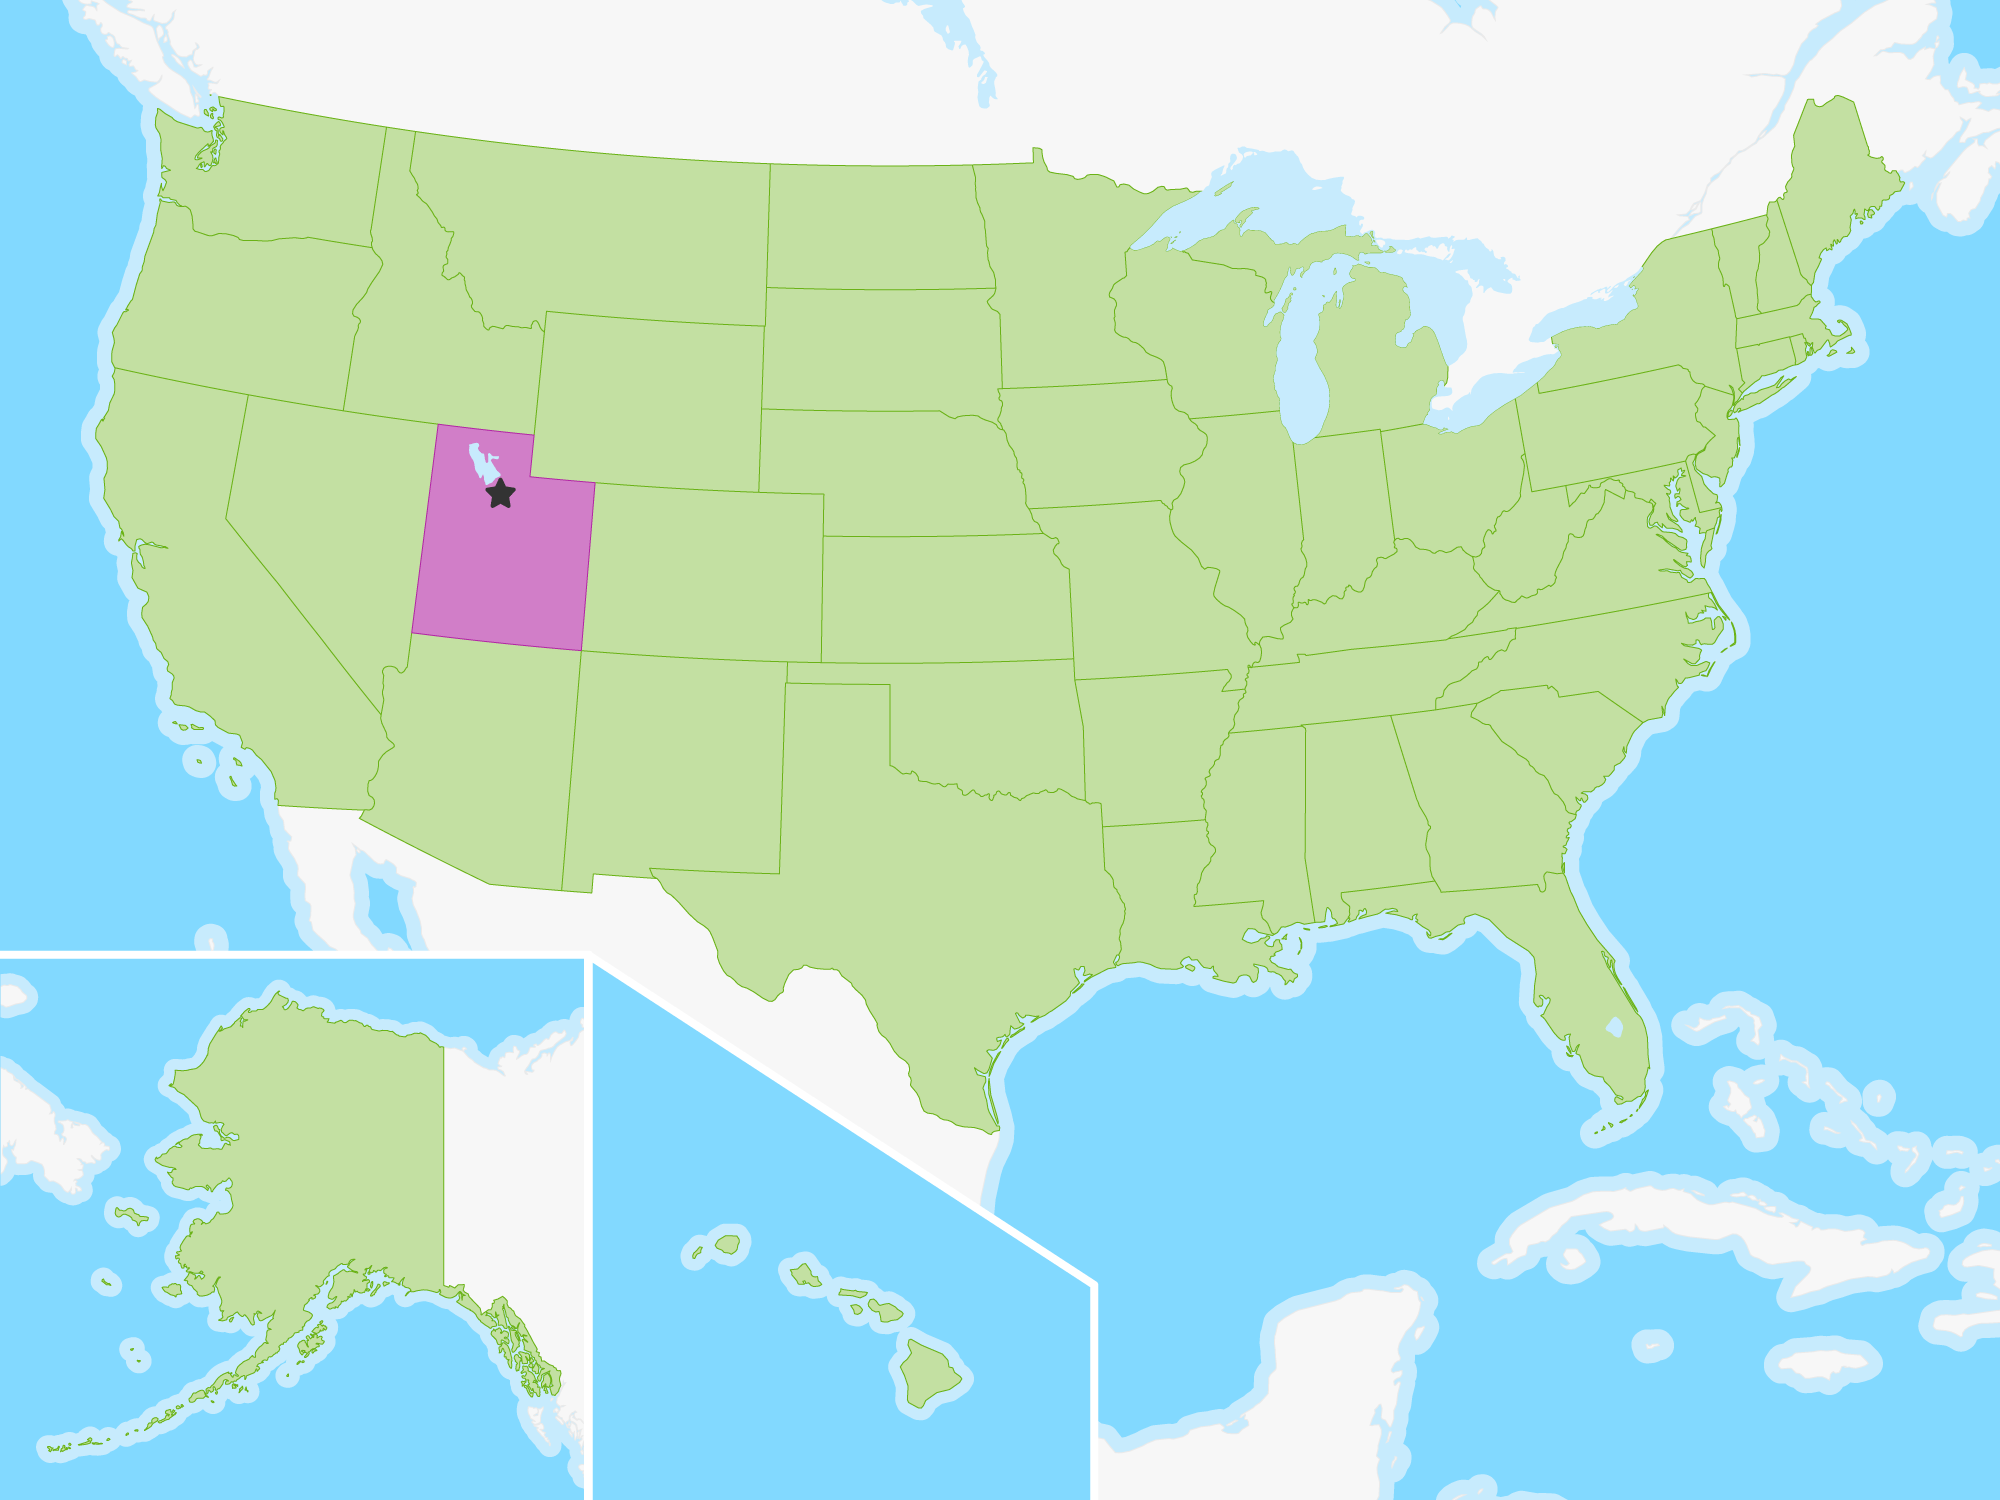 Map of Utah